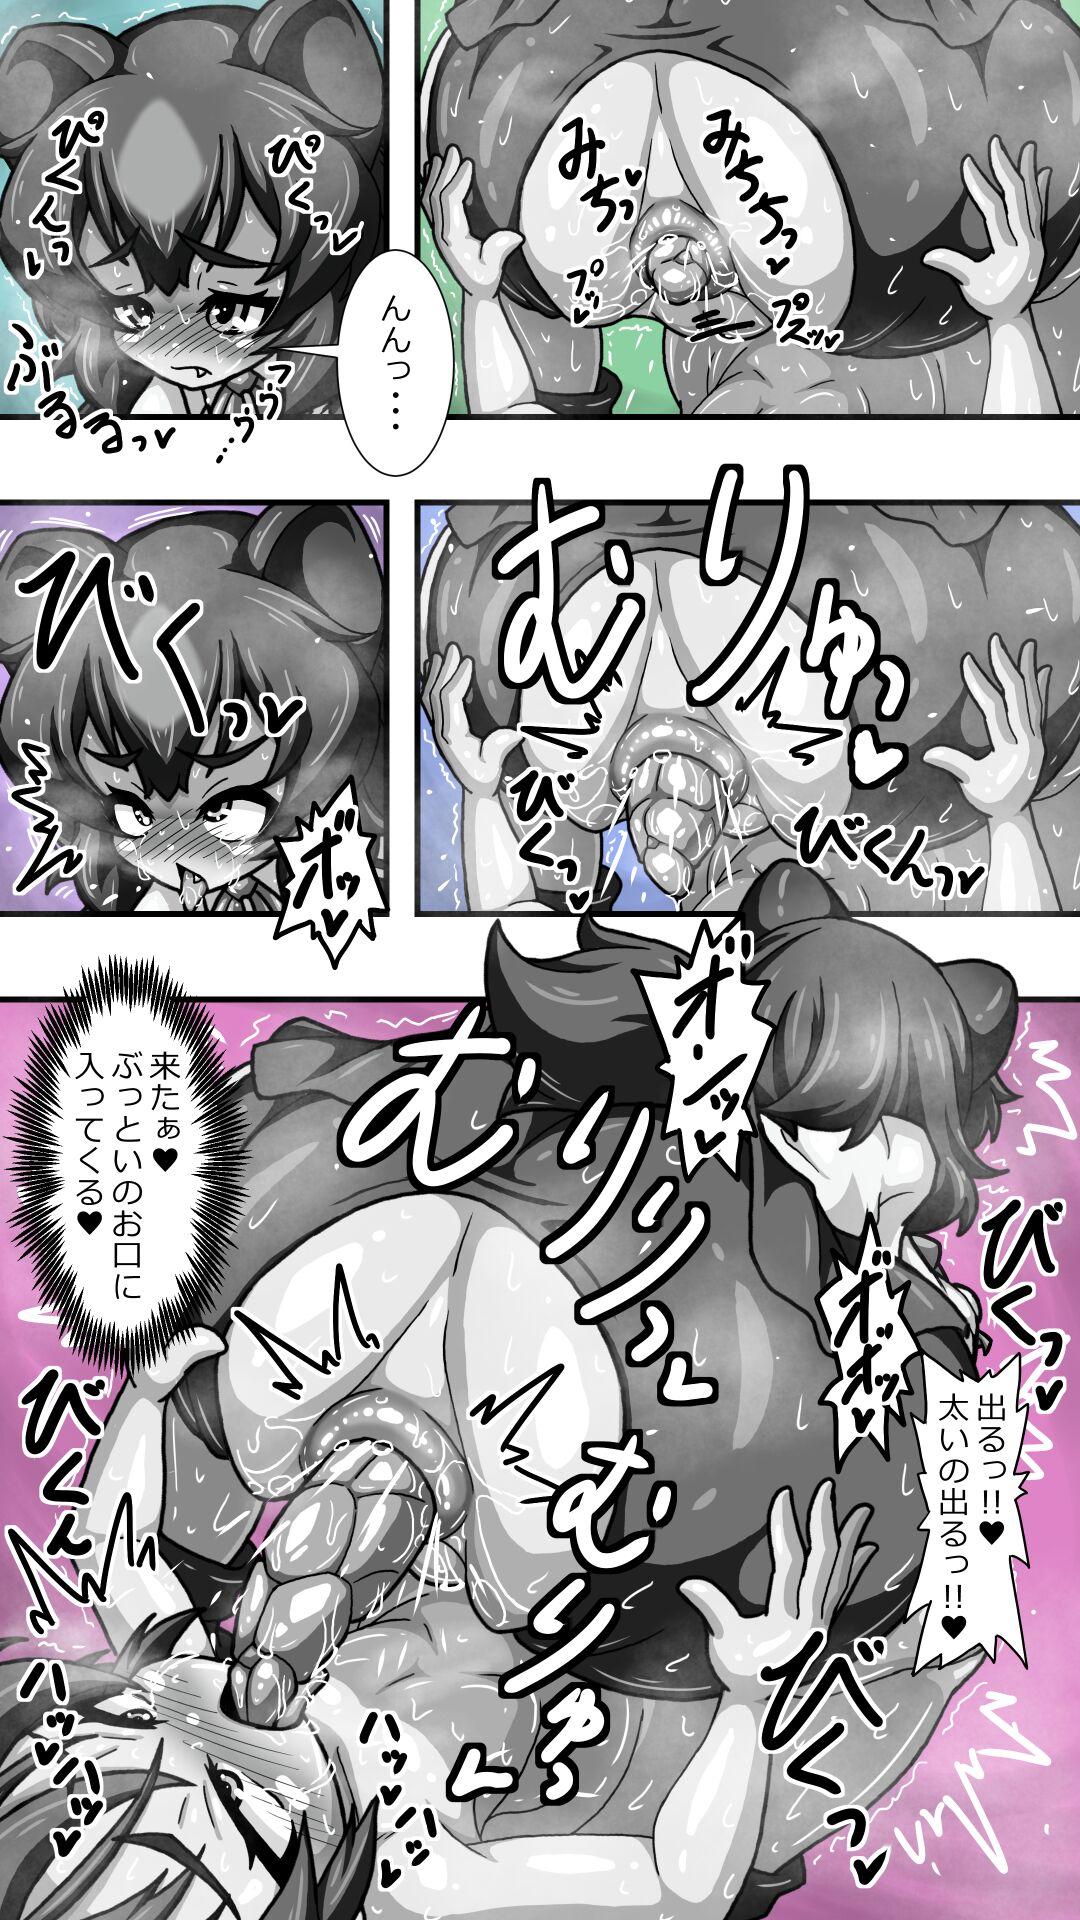 【再掲】ヒグママとショタ隊長のアナルえっち16P漫画収集版 9